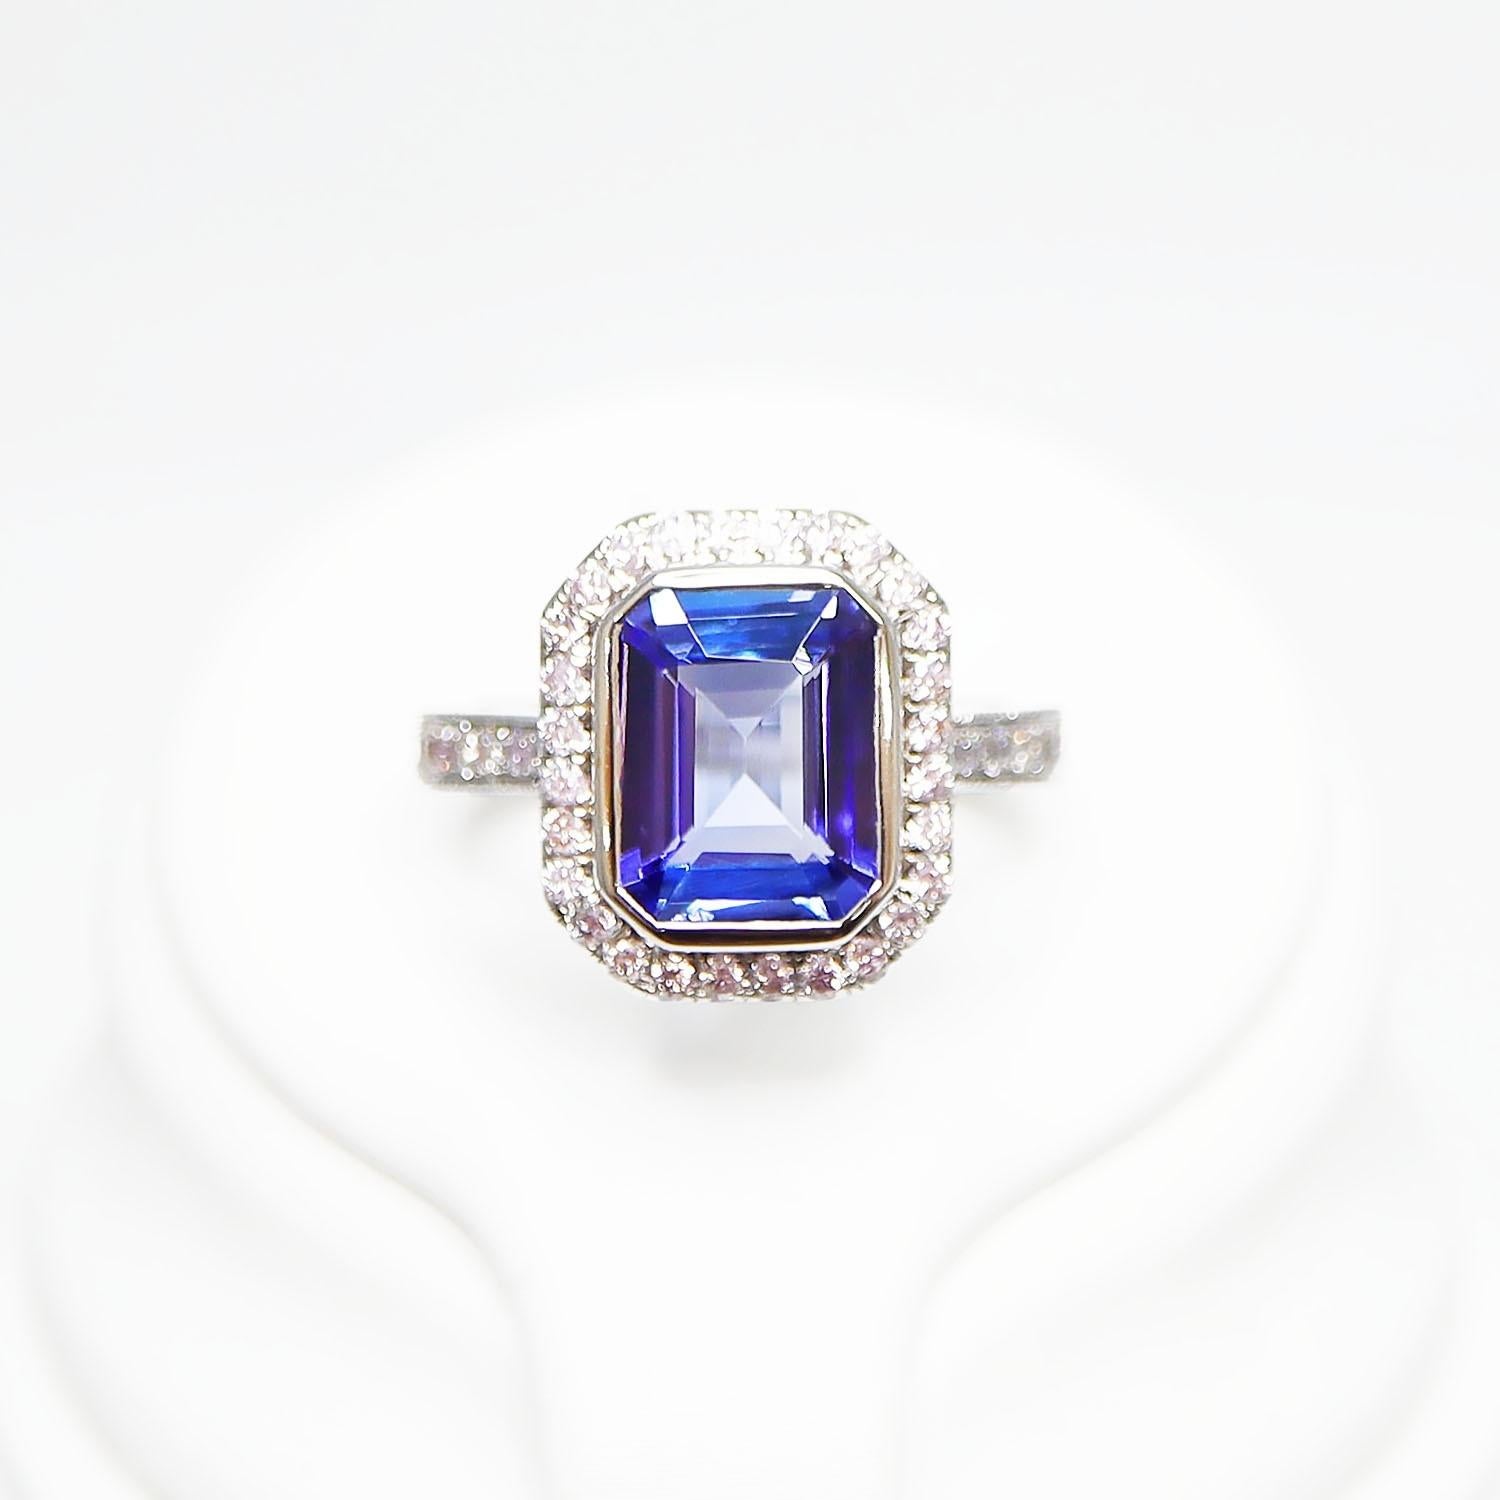 *14K 2.50 ct Tansanit&Rosa Diamant Antiker Art Deco Stil Verlobungsring
Natürlicher, intensiv bläulich-violetter Tansanit als Mittelstein mit einem Gewicht von 2,50 ct, umgeben von natürlichen rosafarbenen Diamanten mit einem Gewicht von 0,47 ct auf